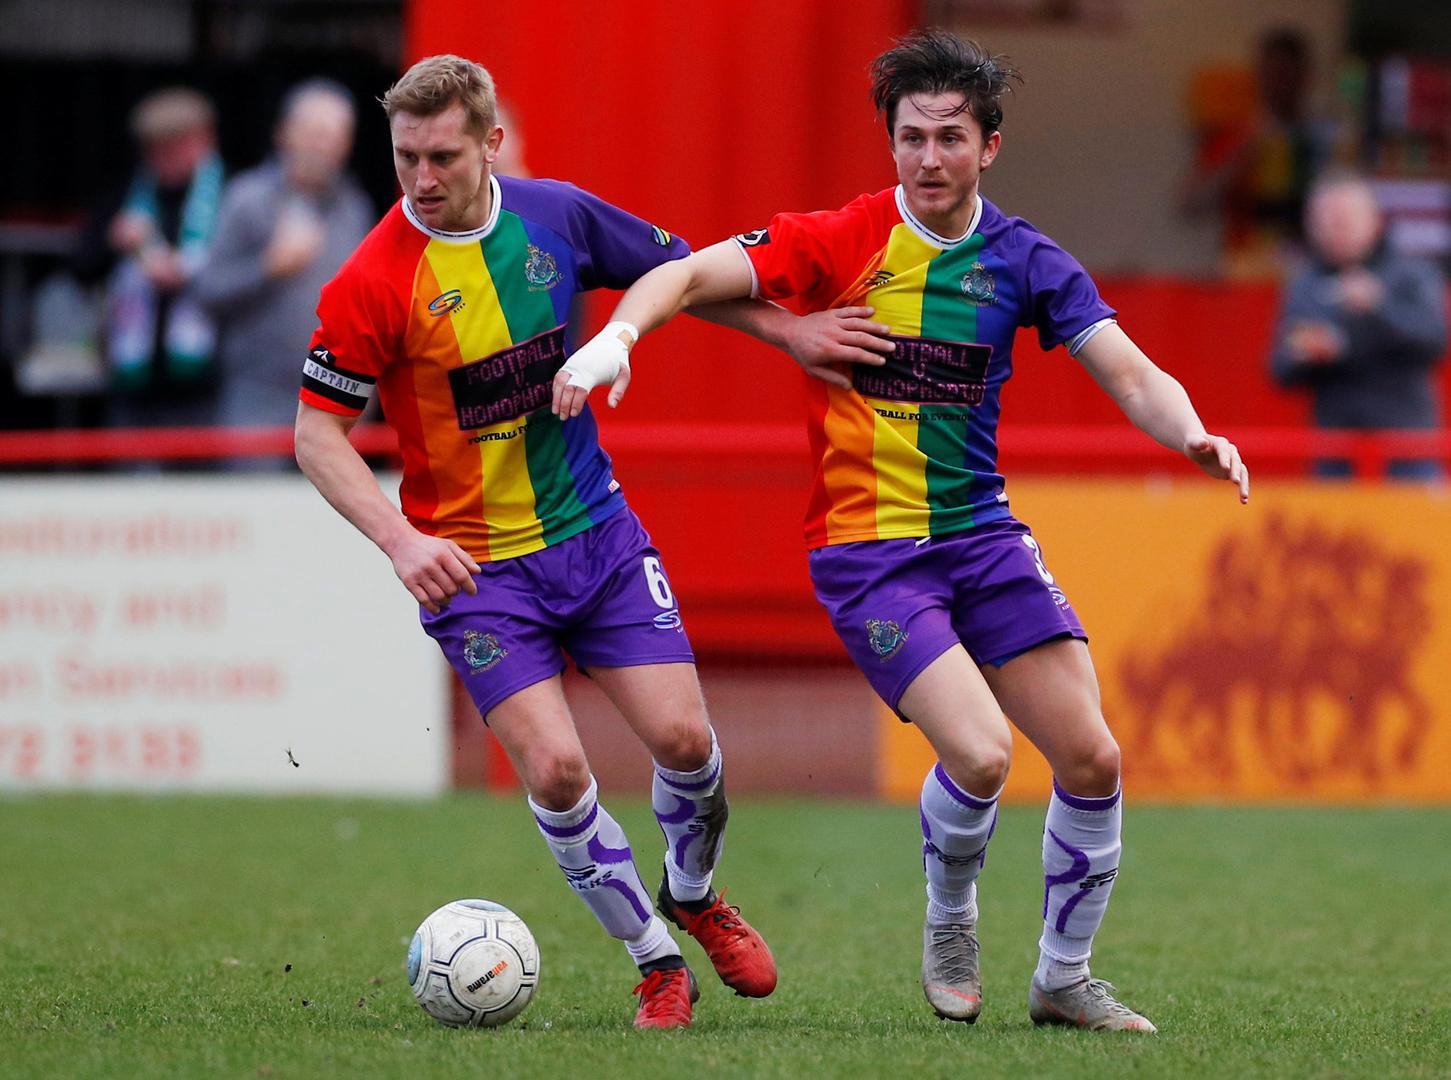 Odlučili su se u znak podrške LGBT zajednici odigrati utakmicu u dresovima duginih boja. 

